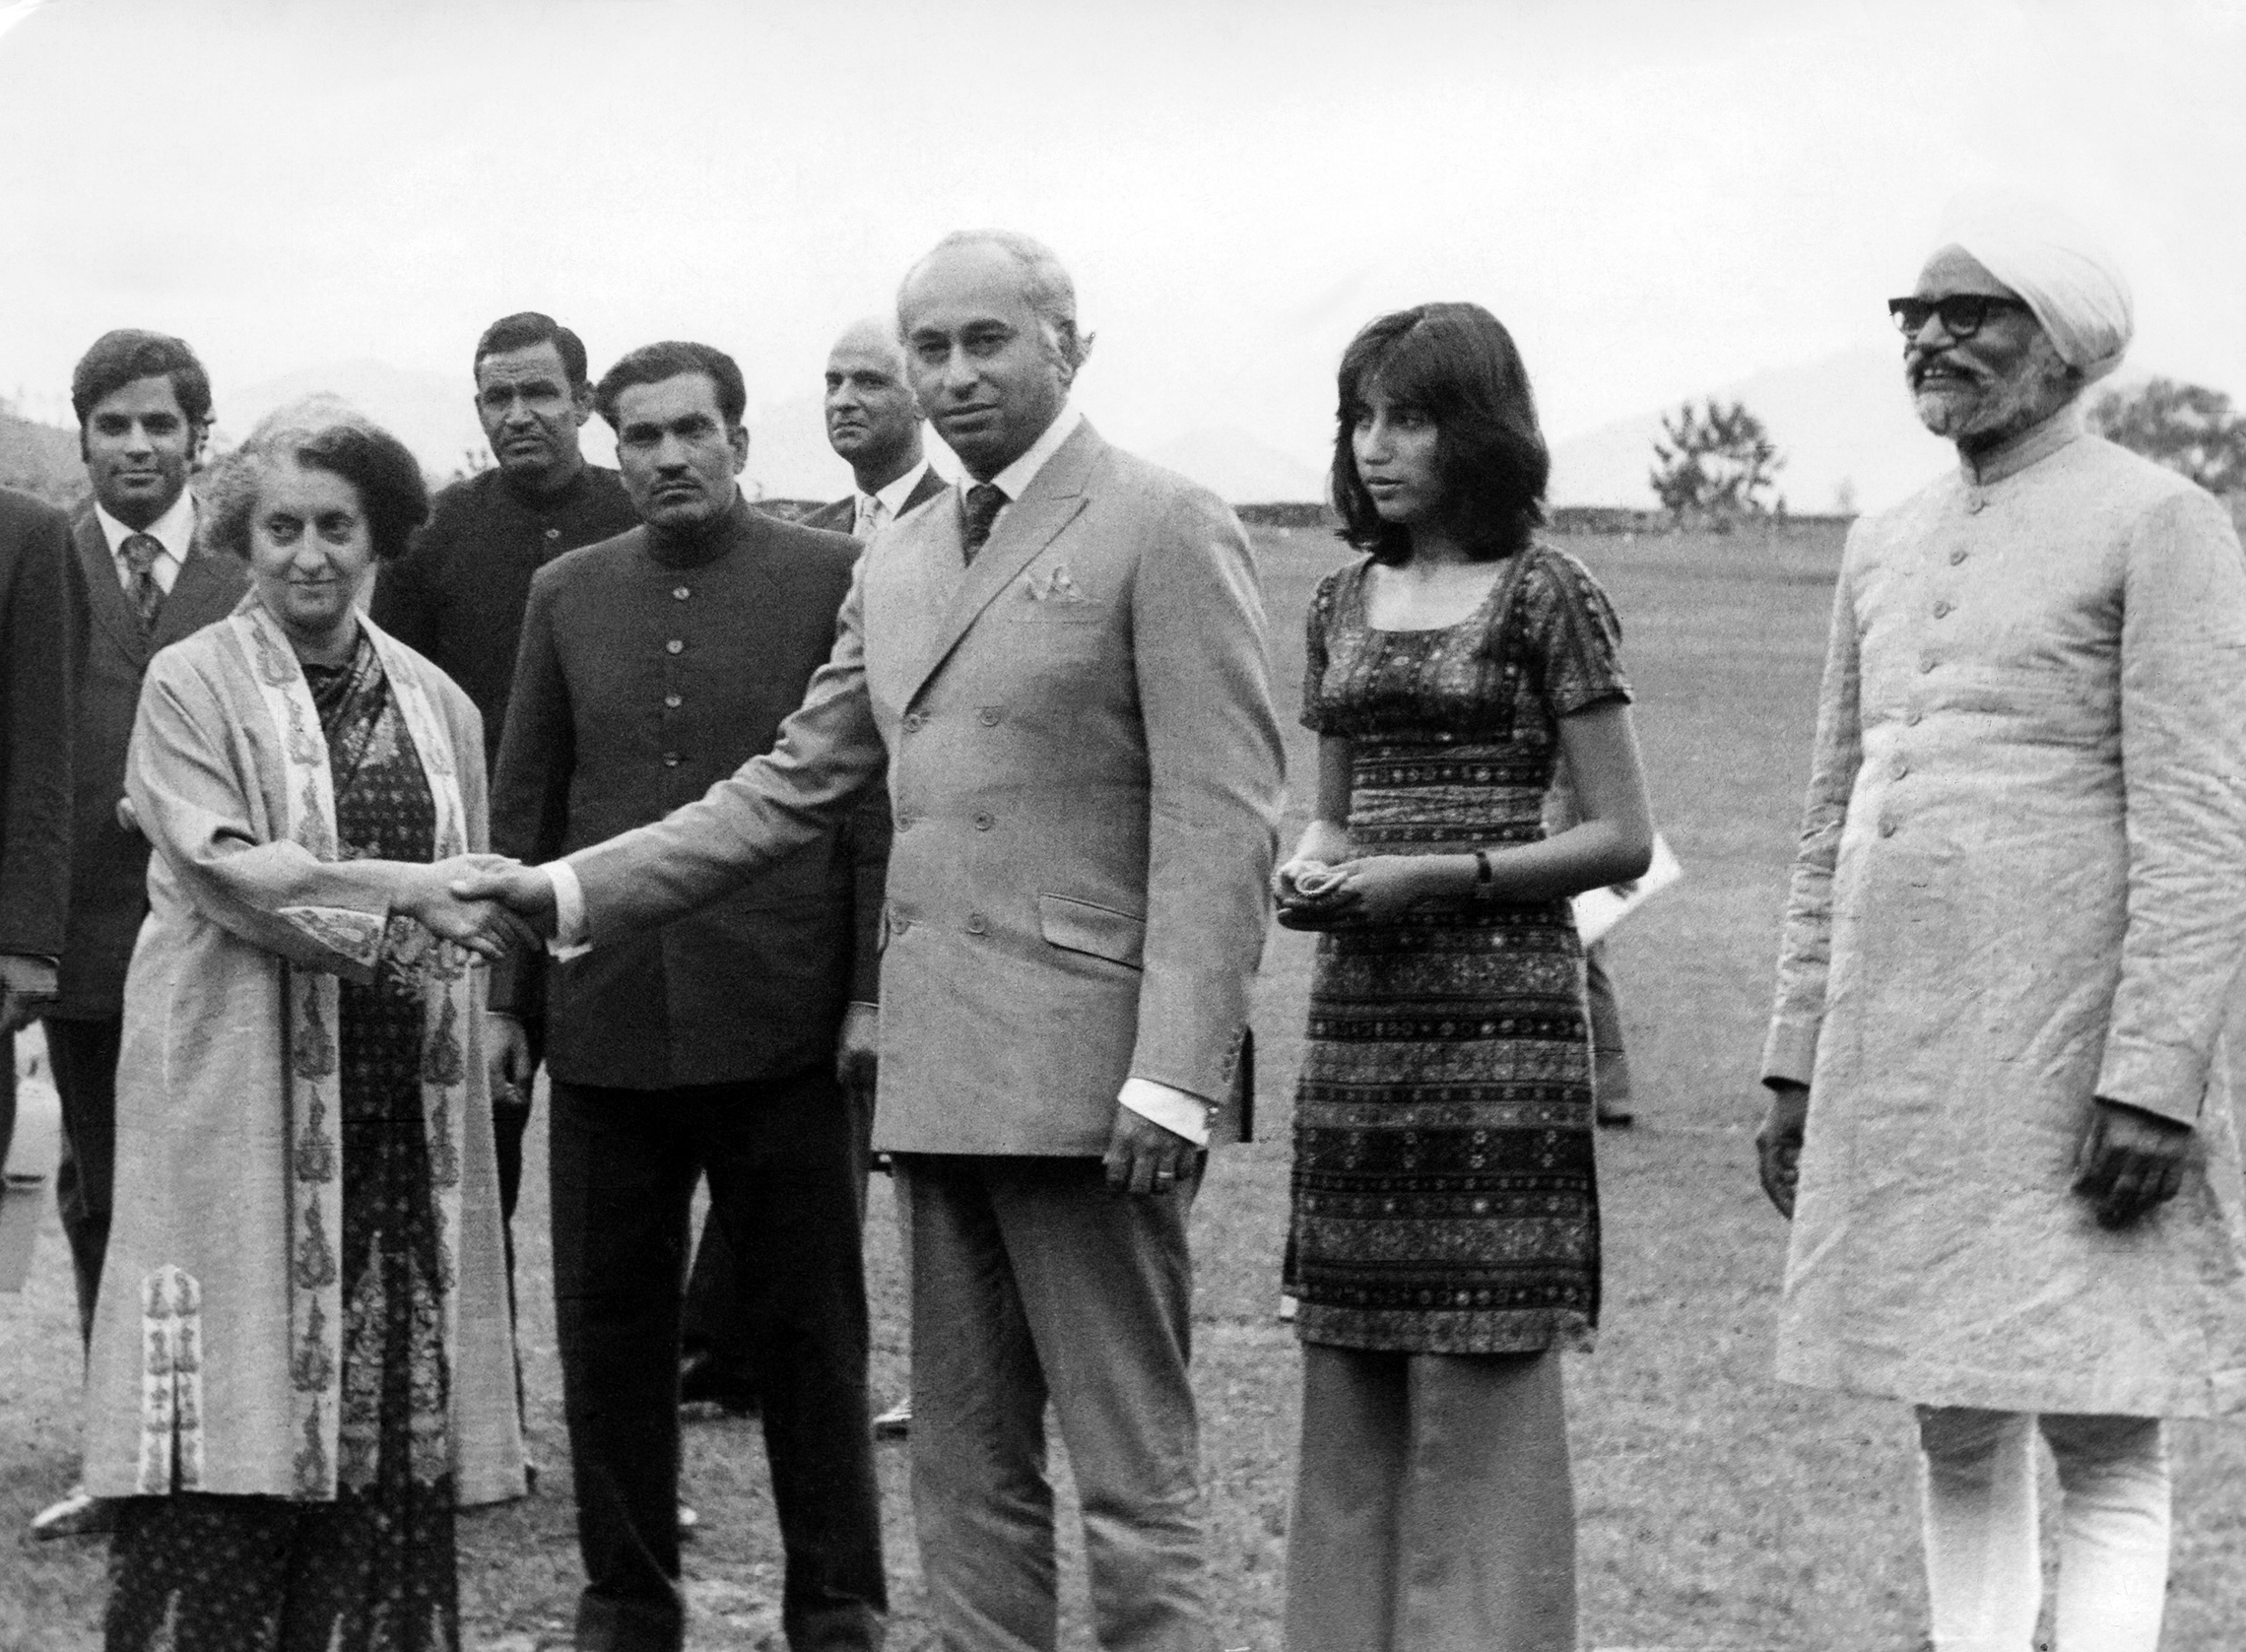 Il presidente pakistano Zulfikar Ali Bhutto stringe la mano al primo ministro indiano Indira Gandhi il 28 giugno 1972 a Shimla, capitale estiva dell'India, mentre sua figlia Benazir Bhutto e il ministro degli esteri indiano Swaran Singh guardano. Bhutto visitò l'India per incontrare il primo ministro Indira Gandhi e negoziare un accordo di pace formale e il rilascio di 93.000 prigionieri di guerra pakistani. I due leader firmarono l'accordo di Shimla, che impegnava entrambe le nazioni a stabilire una linea di controllo nel Kashmir e le obbligava a risolvere pacificamente le dispute attraverso colloqui bilaterali. (Foto di AFP/Getty Images)'s Prime Minister Indira Gandhi June 28, 1972 in Shimla, the summer capital of India, while his daughter Benazir Bhutto and Indian Foreign Minister Swaran Singh look on. Bhutto visited India to meet Prime Minister Indira Gandhi and negotiated a formal peace agreement and the release of 93,000 Pakistani prisoners of war. The two leaders signed the Shimla Agreement, which committed both nations to establish a Line of Control in Kashmir and obligated them to resolve disputes peacefully through bilateral talks. (Photo by AFP/Getty Images)